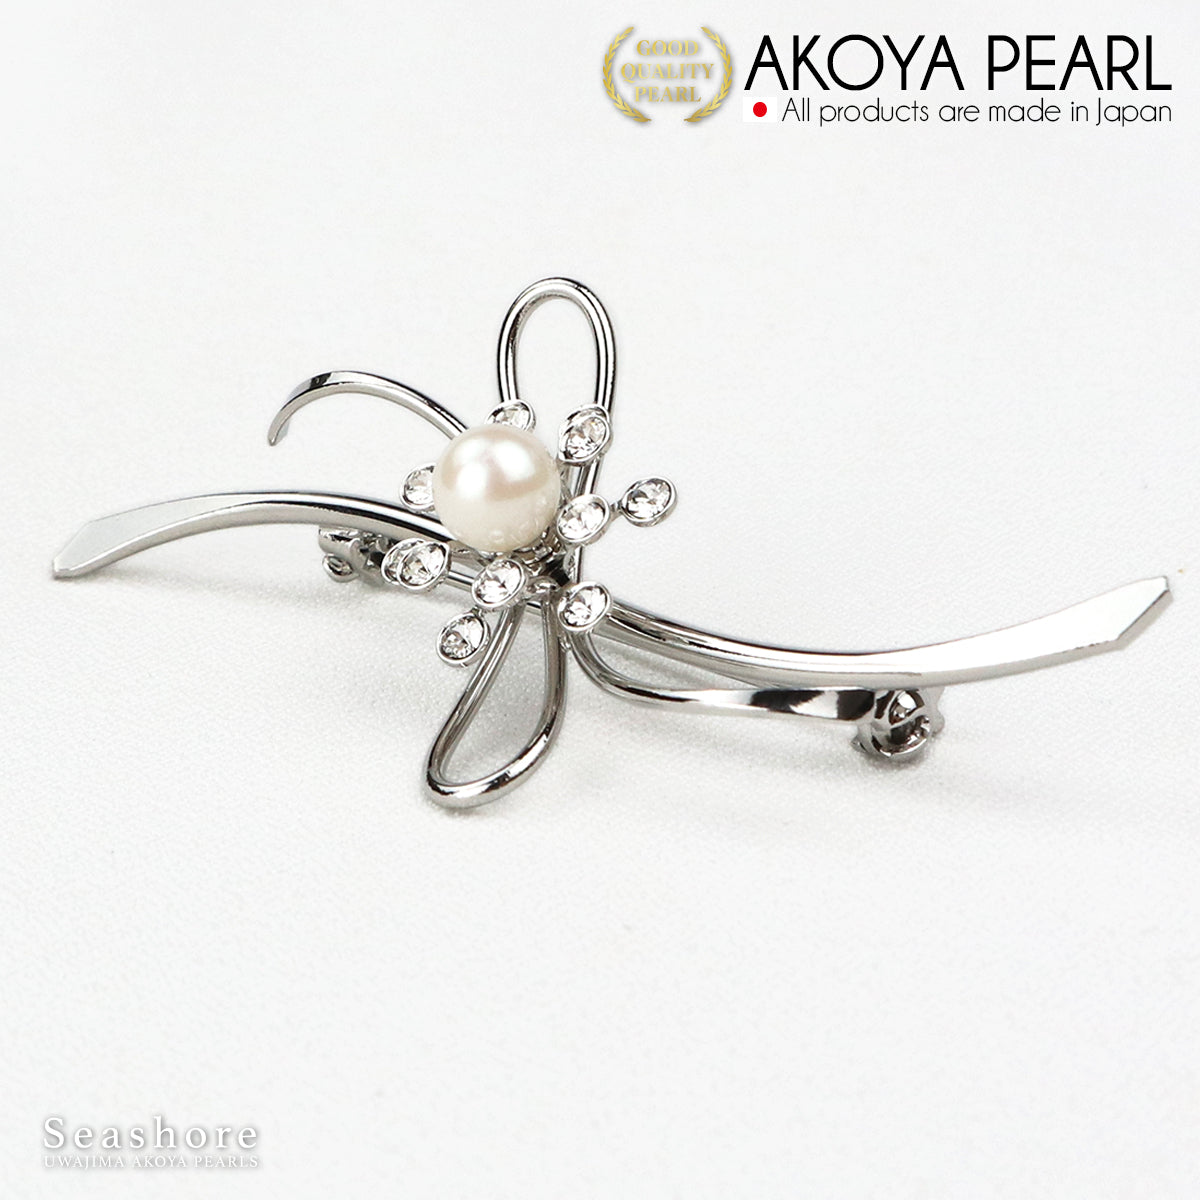 珍珠胸针波浪线丝带黄铜白色 6.5-7.0 毫米 Akoya 珍珠带收纳盒 (3928) 